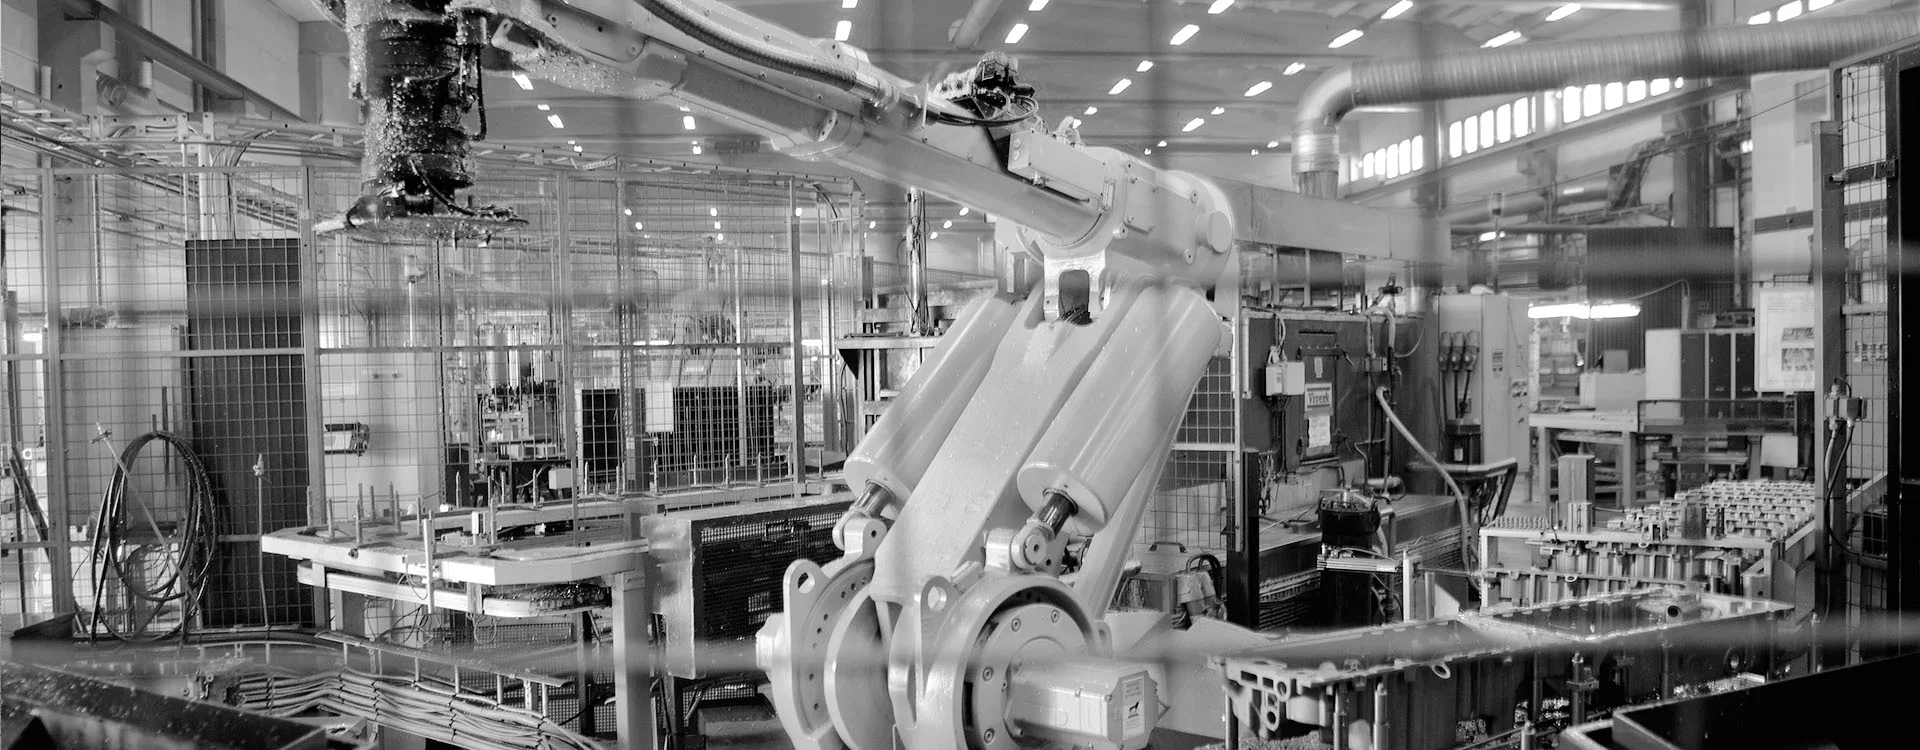 Industrirobot i industrianläggning